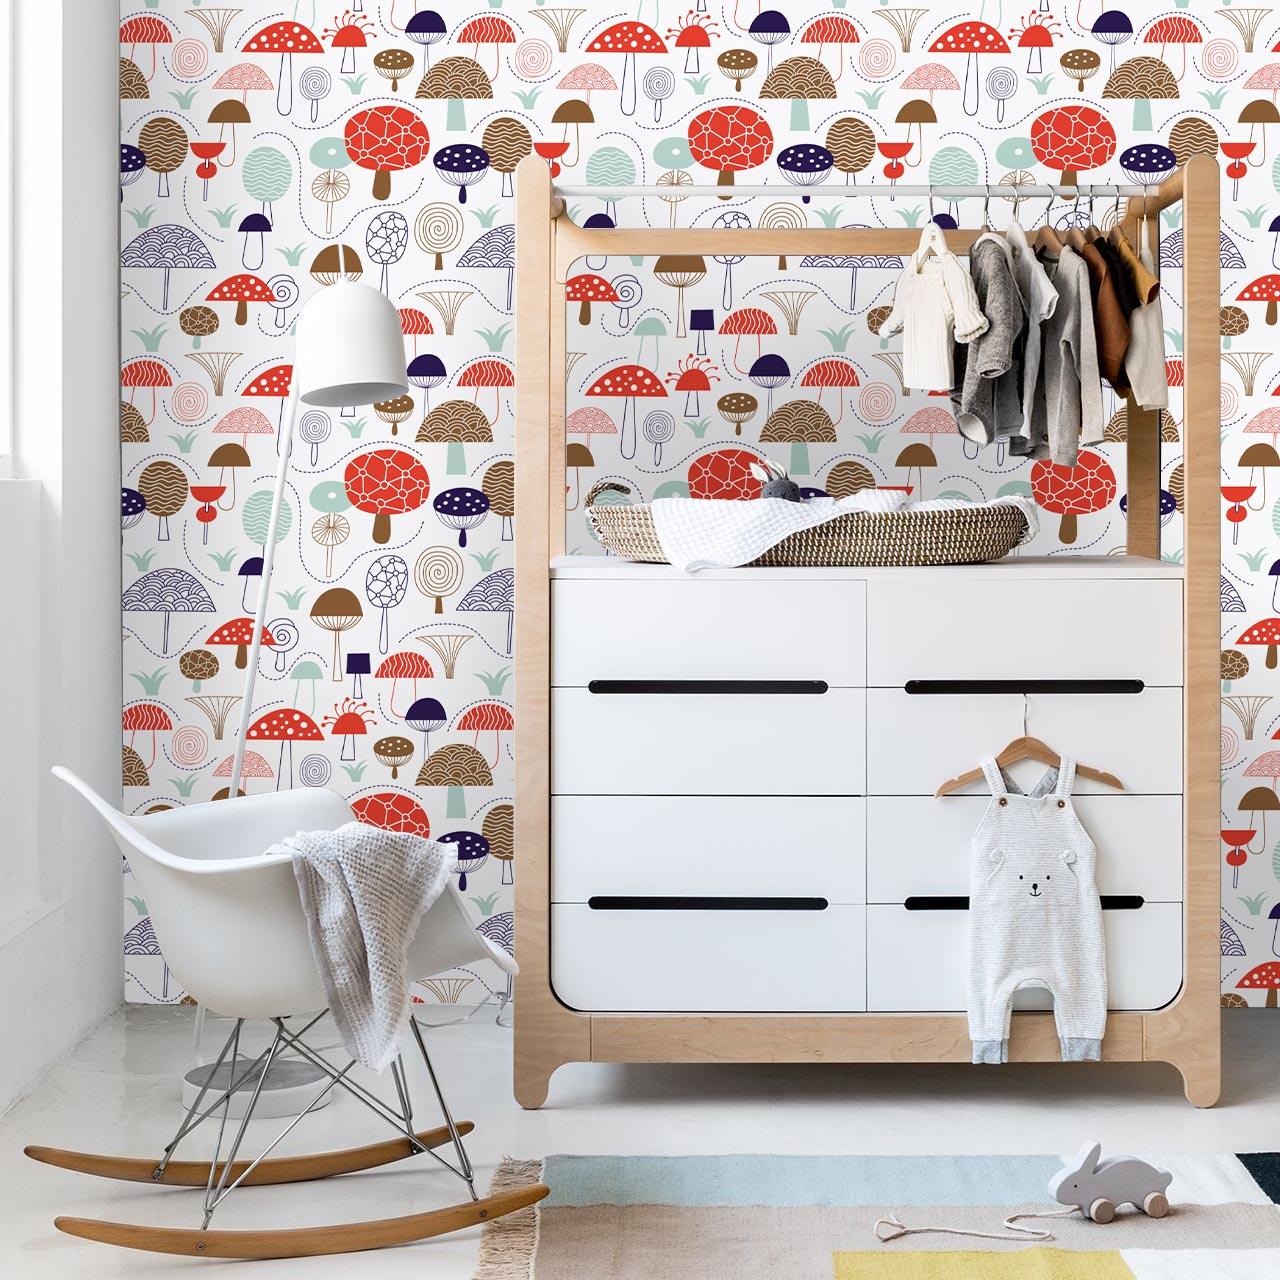 3D Red Mushroom Pattern Wall Mural Wallpaper 33- Jess Art Decoration